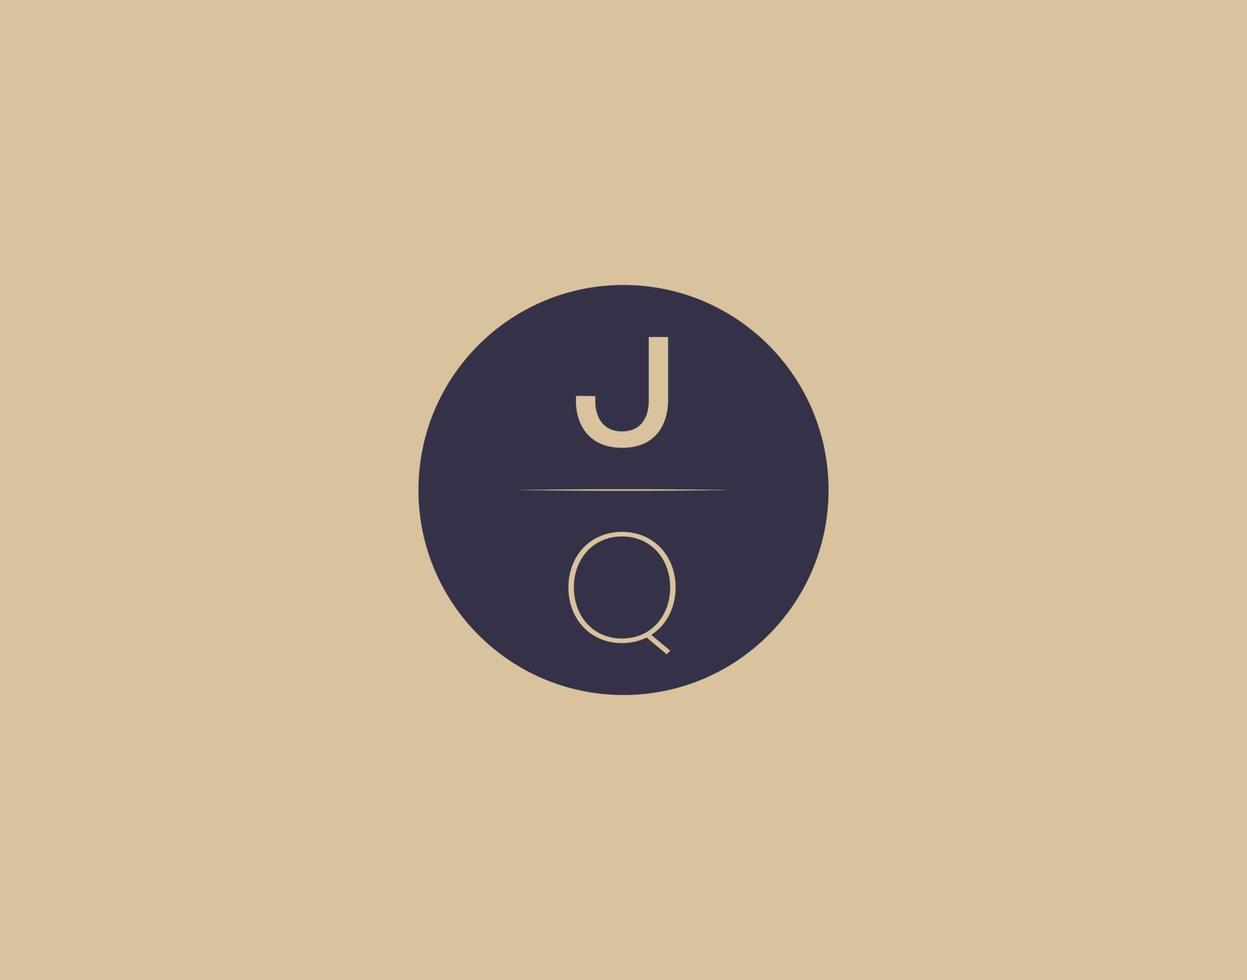 imagens vetoriais de design de logotipo moderno e elegante de letra jq vetor